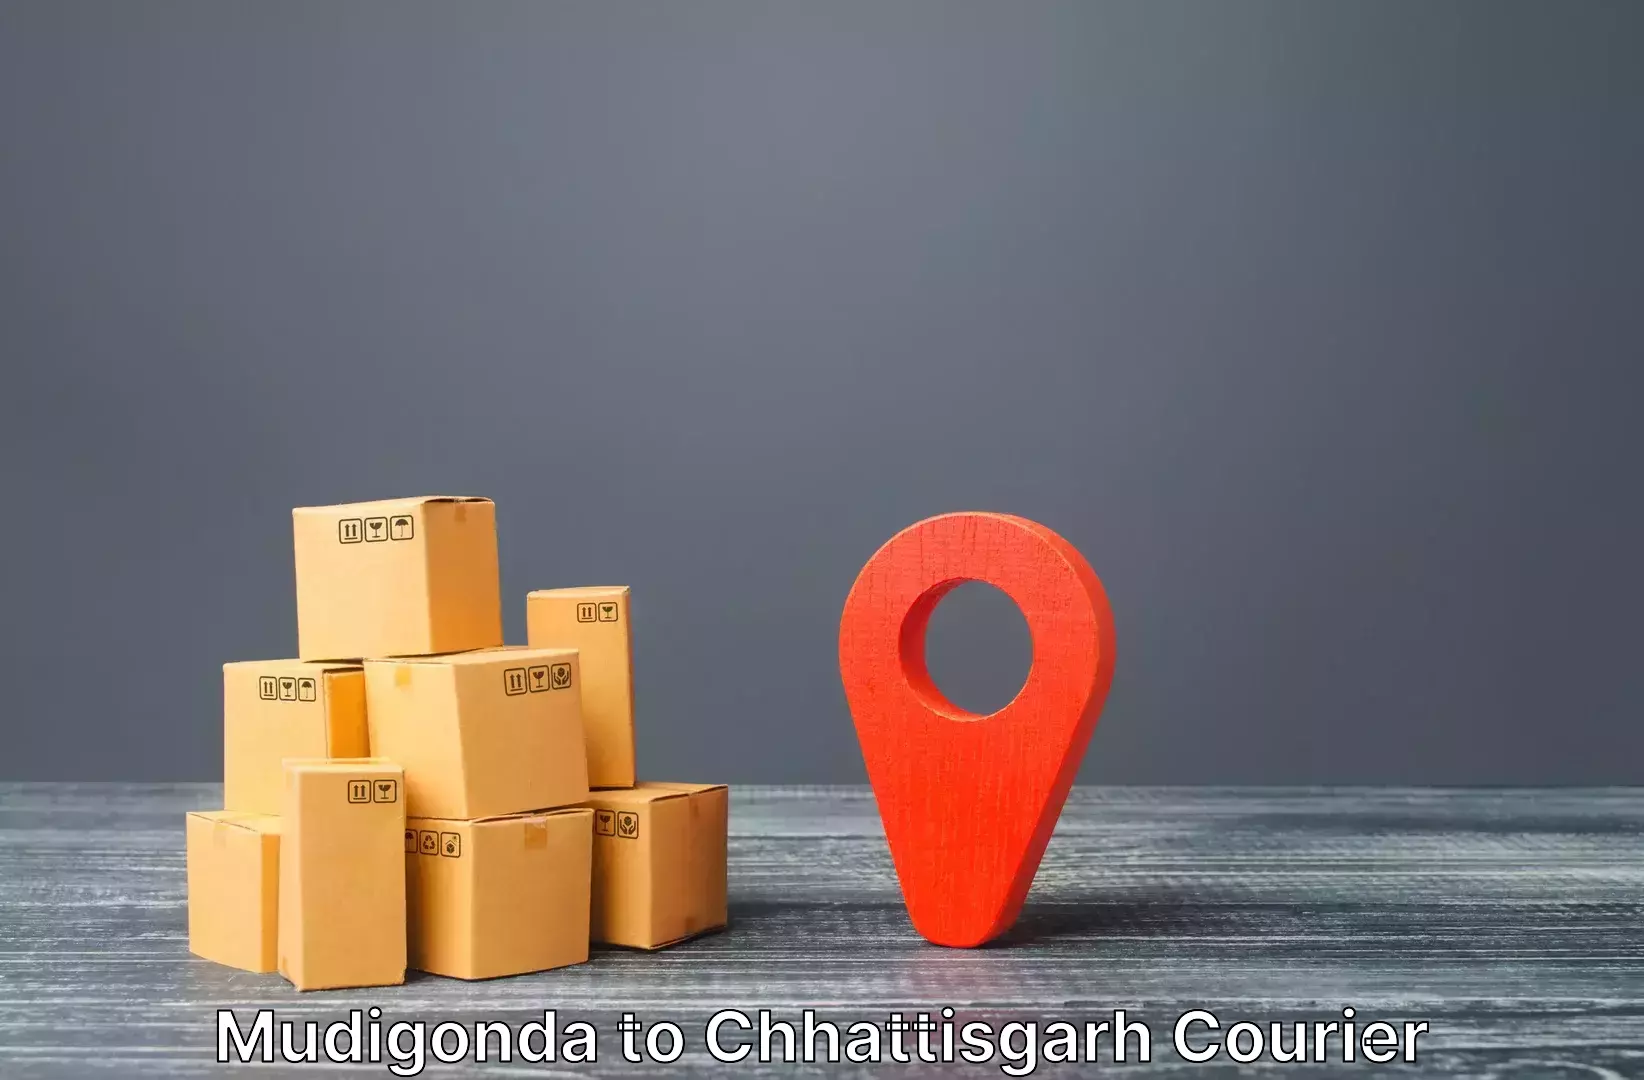 Luggage shipment tracking Mudigonda to Chhattisgarh